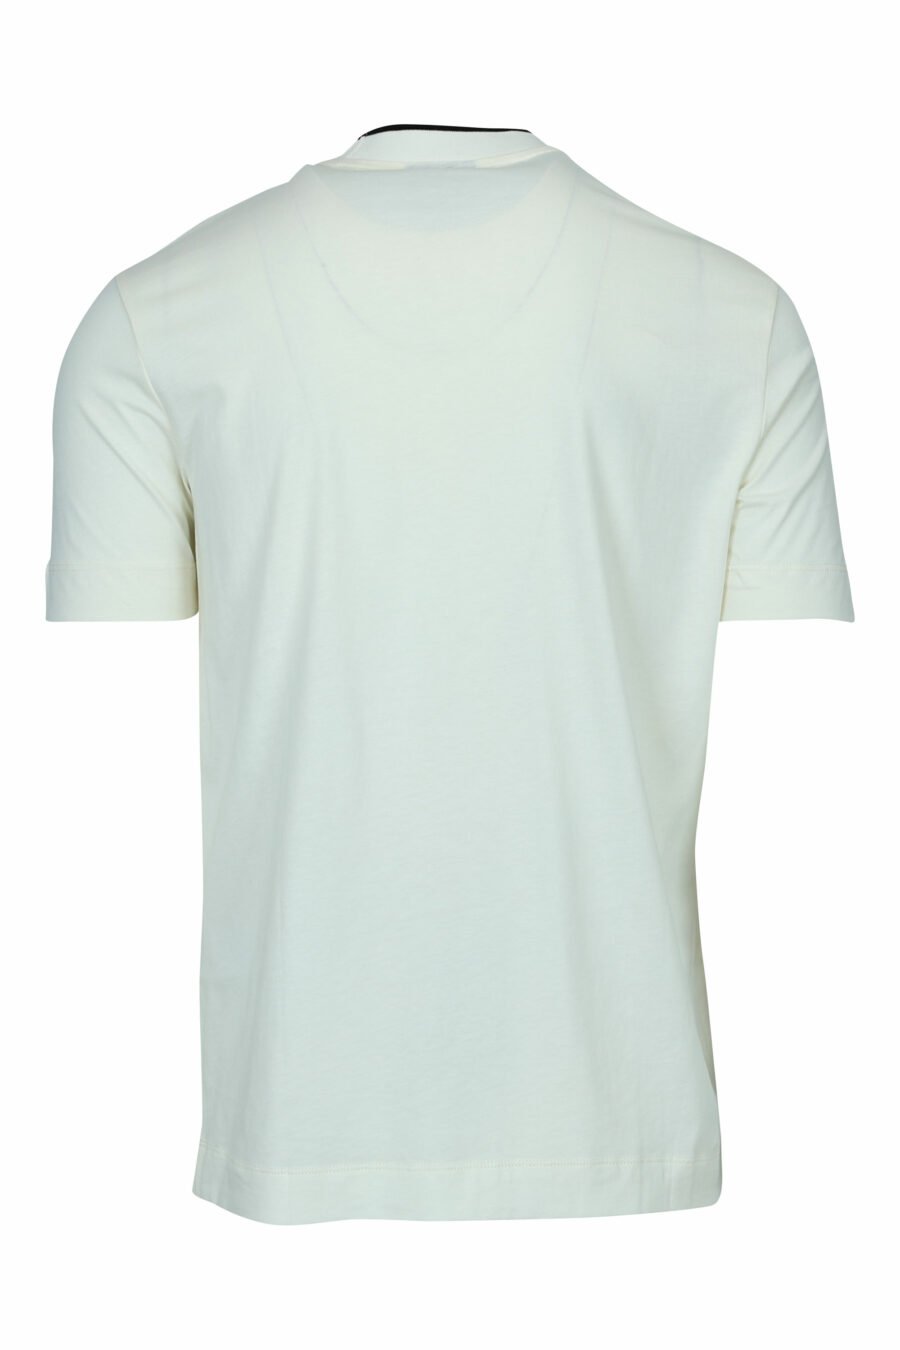 T-shirt de cor creme com minilogo "emporio" centrado - 8057970991724 1